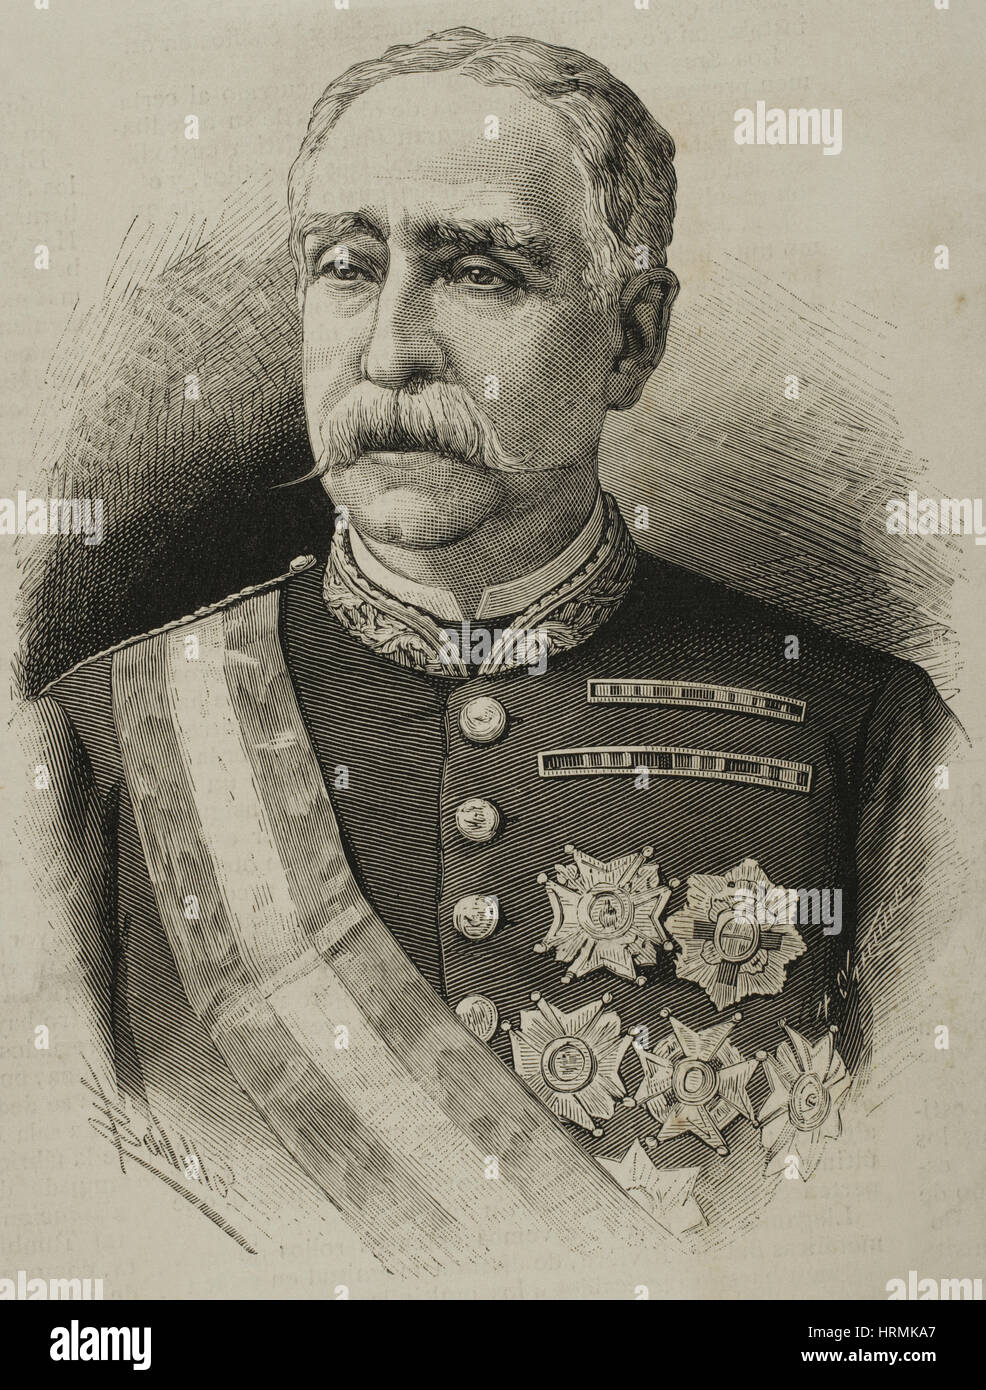 Miguel de la Vega Inclan (1820-1884). Spanish military, governor of Puerto Rico. Portrait. Engraving by Arturo Carretero (1852-1903). 'La Ilustración Española y Americana', 1884. Stock Photo